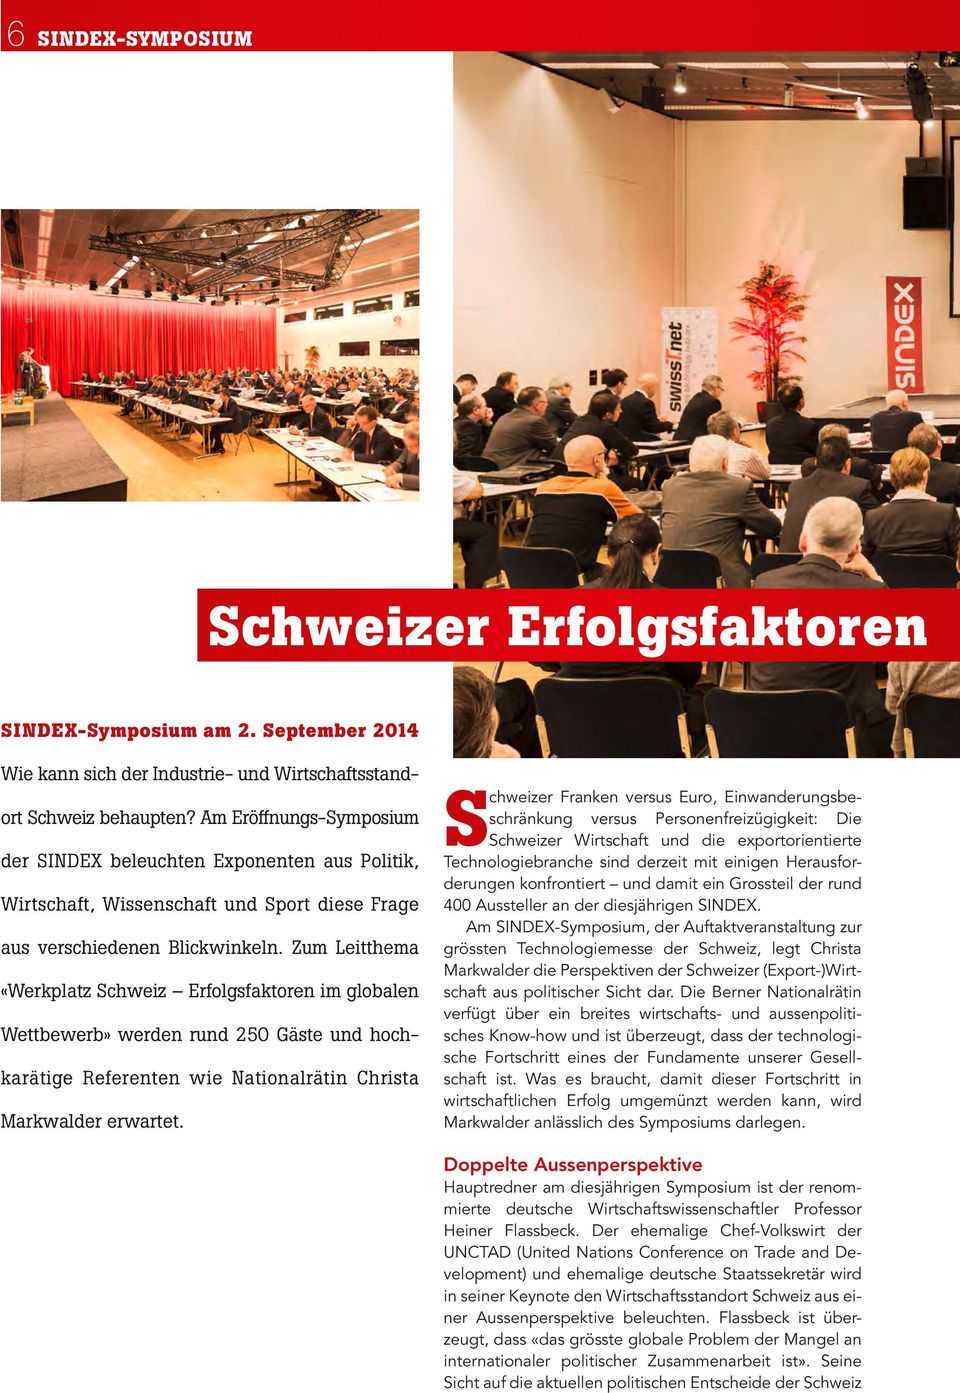 Zum Leitthema «Werkplatz Schweiz Erfolgsfaktoren im globalen Wettbewerb» werden rund 250 Gäste und hochkarätige Referenten wie Nationalrätin Christa Markwalder erwartet.